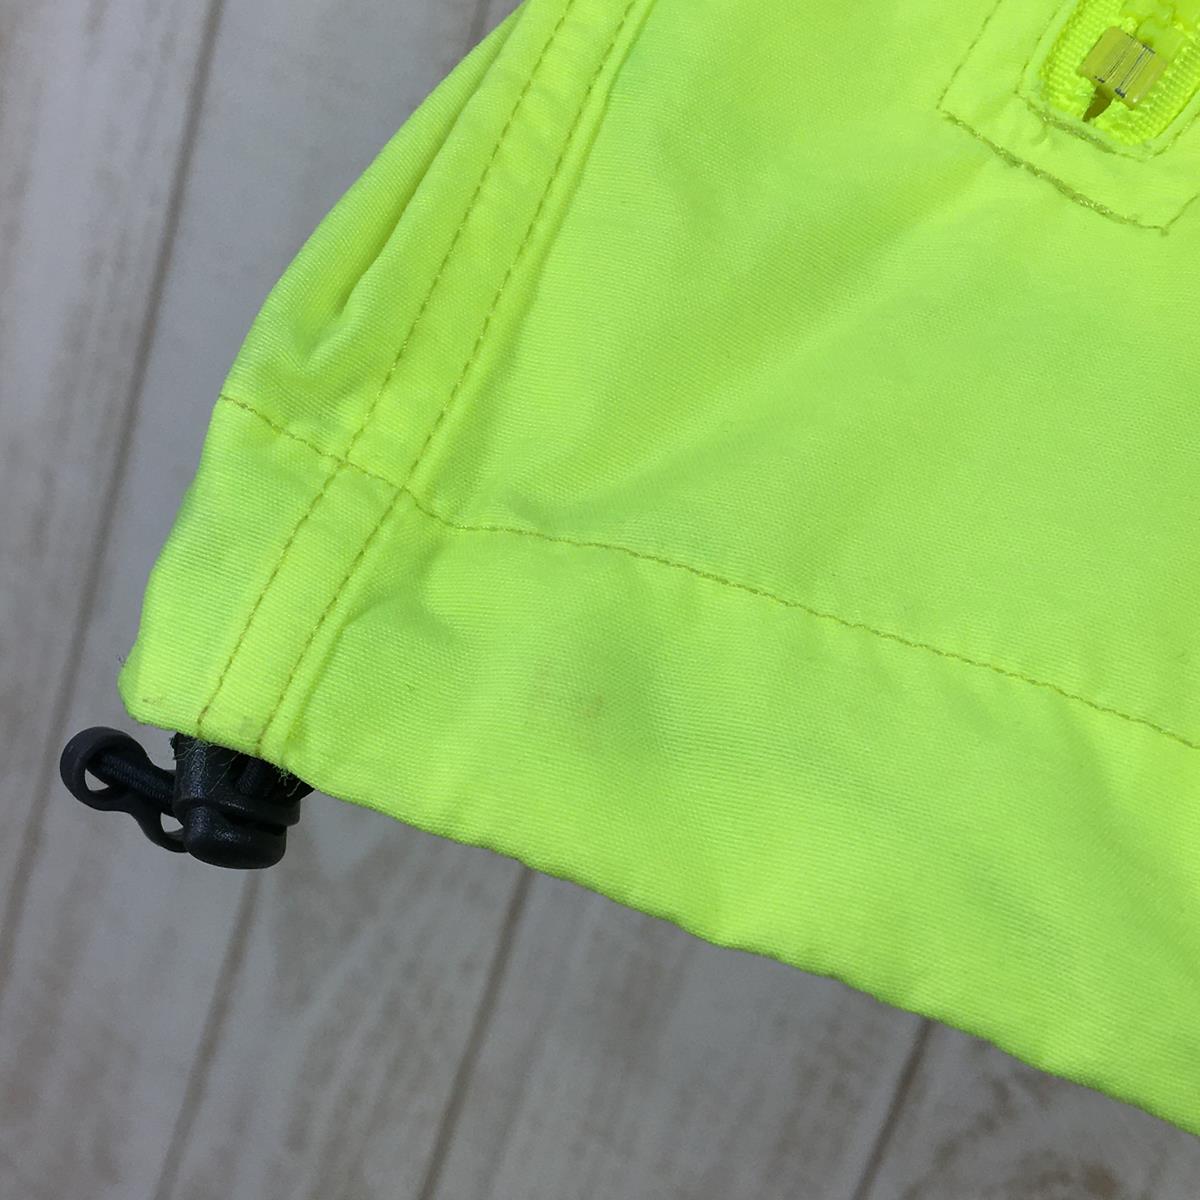 【WOMEN's M】 ノースフェイス コンパクト ジャケット Compact Jacket ウィンドシェル フーディ NORTH FACE NPW21430 Neon Green グリーン系